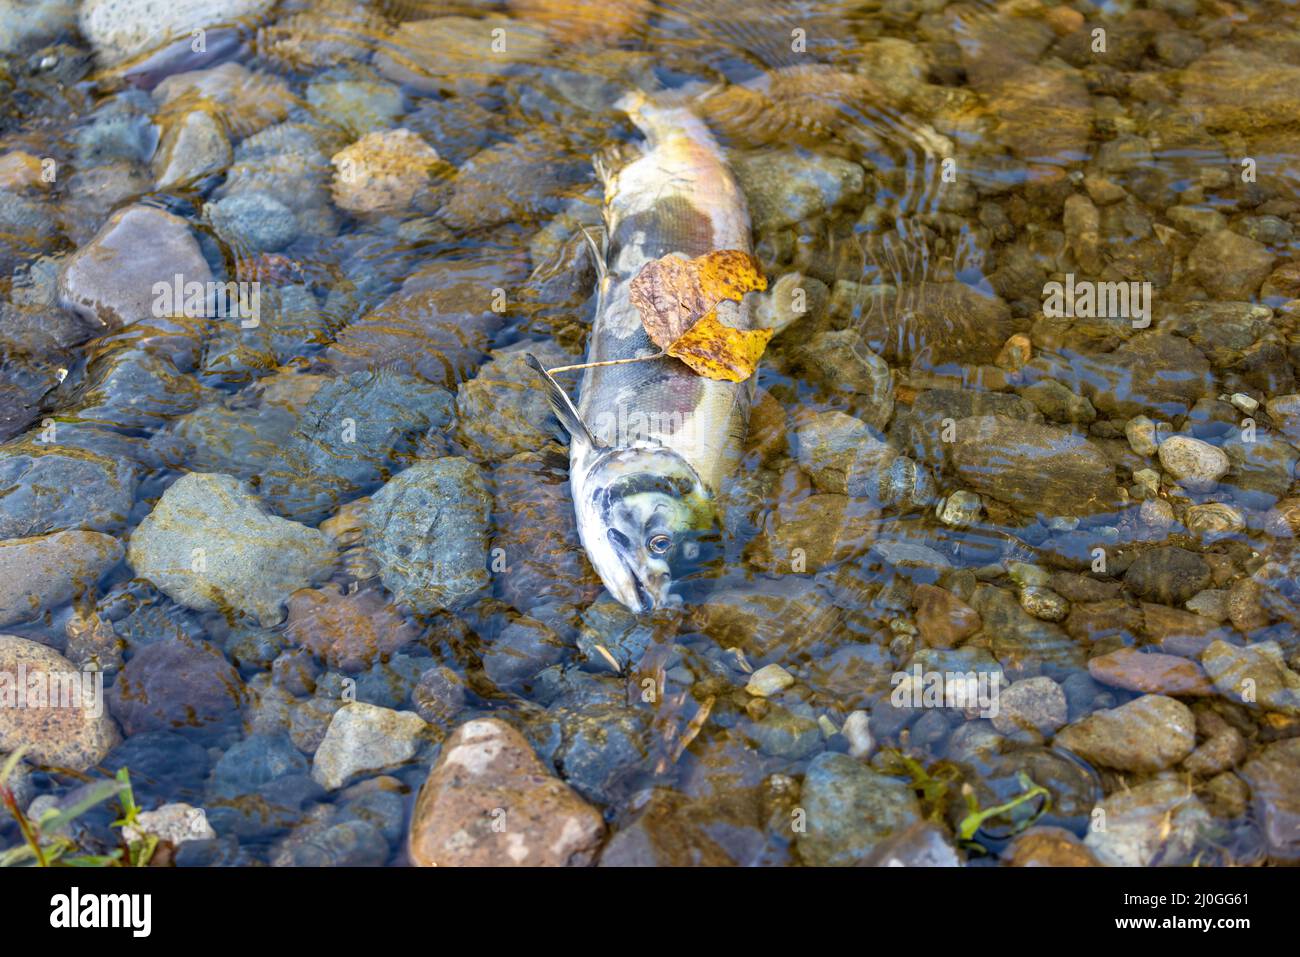 carcasse de poisson mort sur la rive d'une rivière Banque D'Images